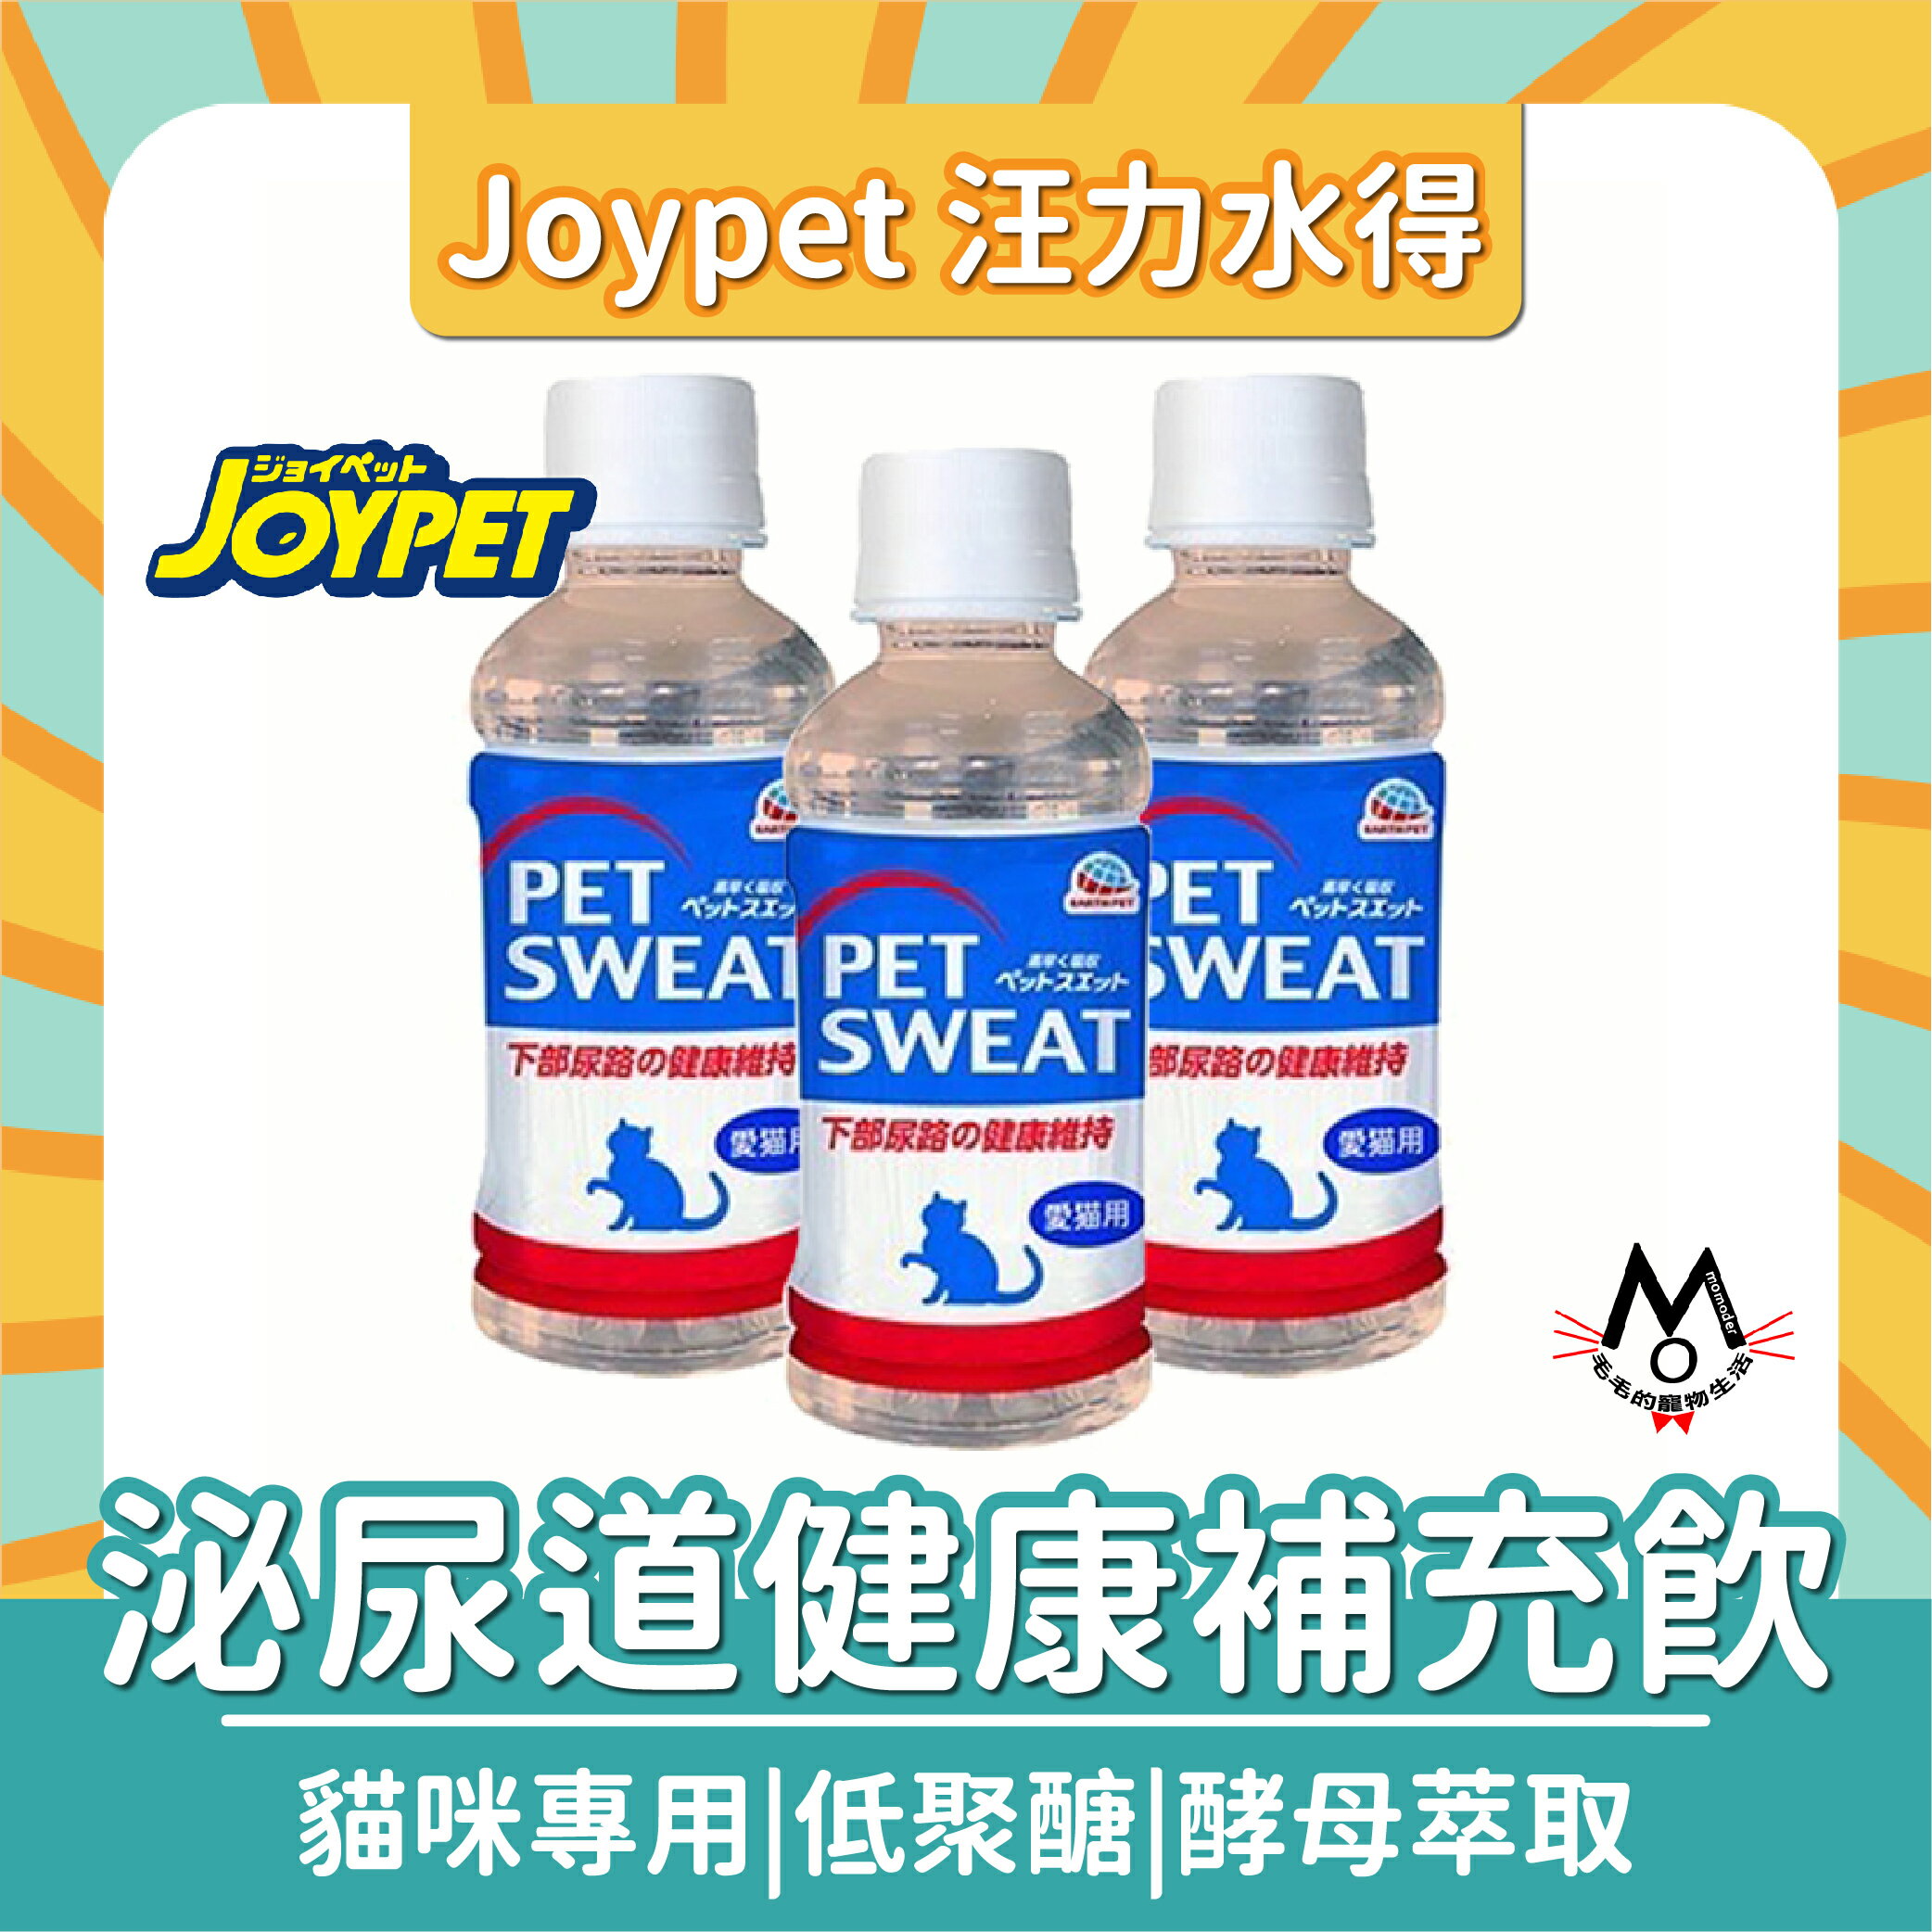 Joypet 汪力水得 貓用 泌尿道健康補充飲 等滲透壓水 200ml